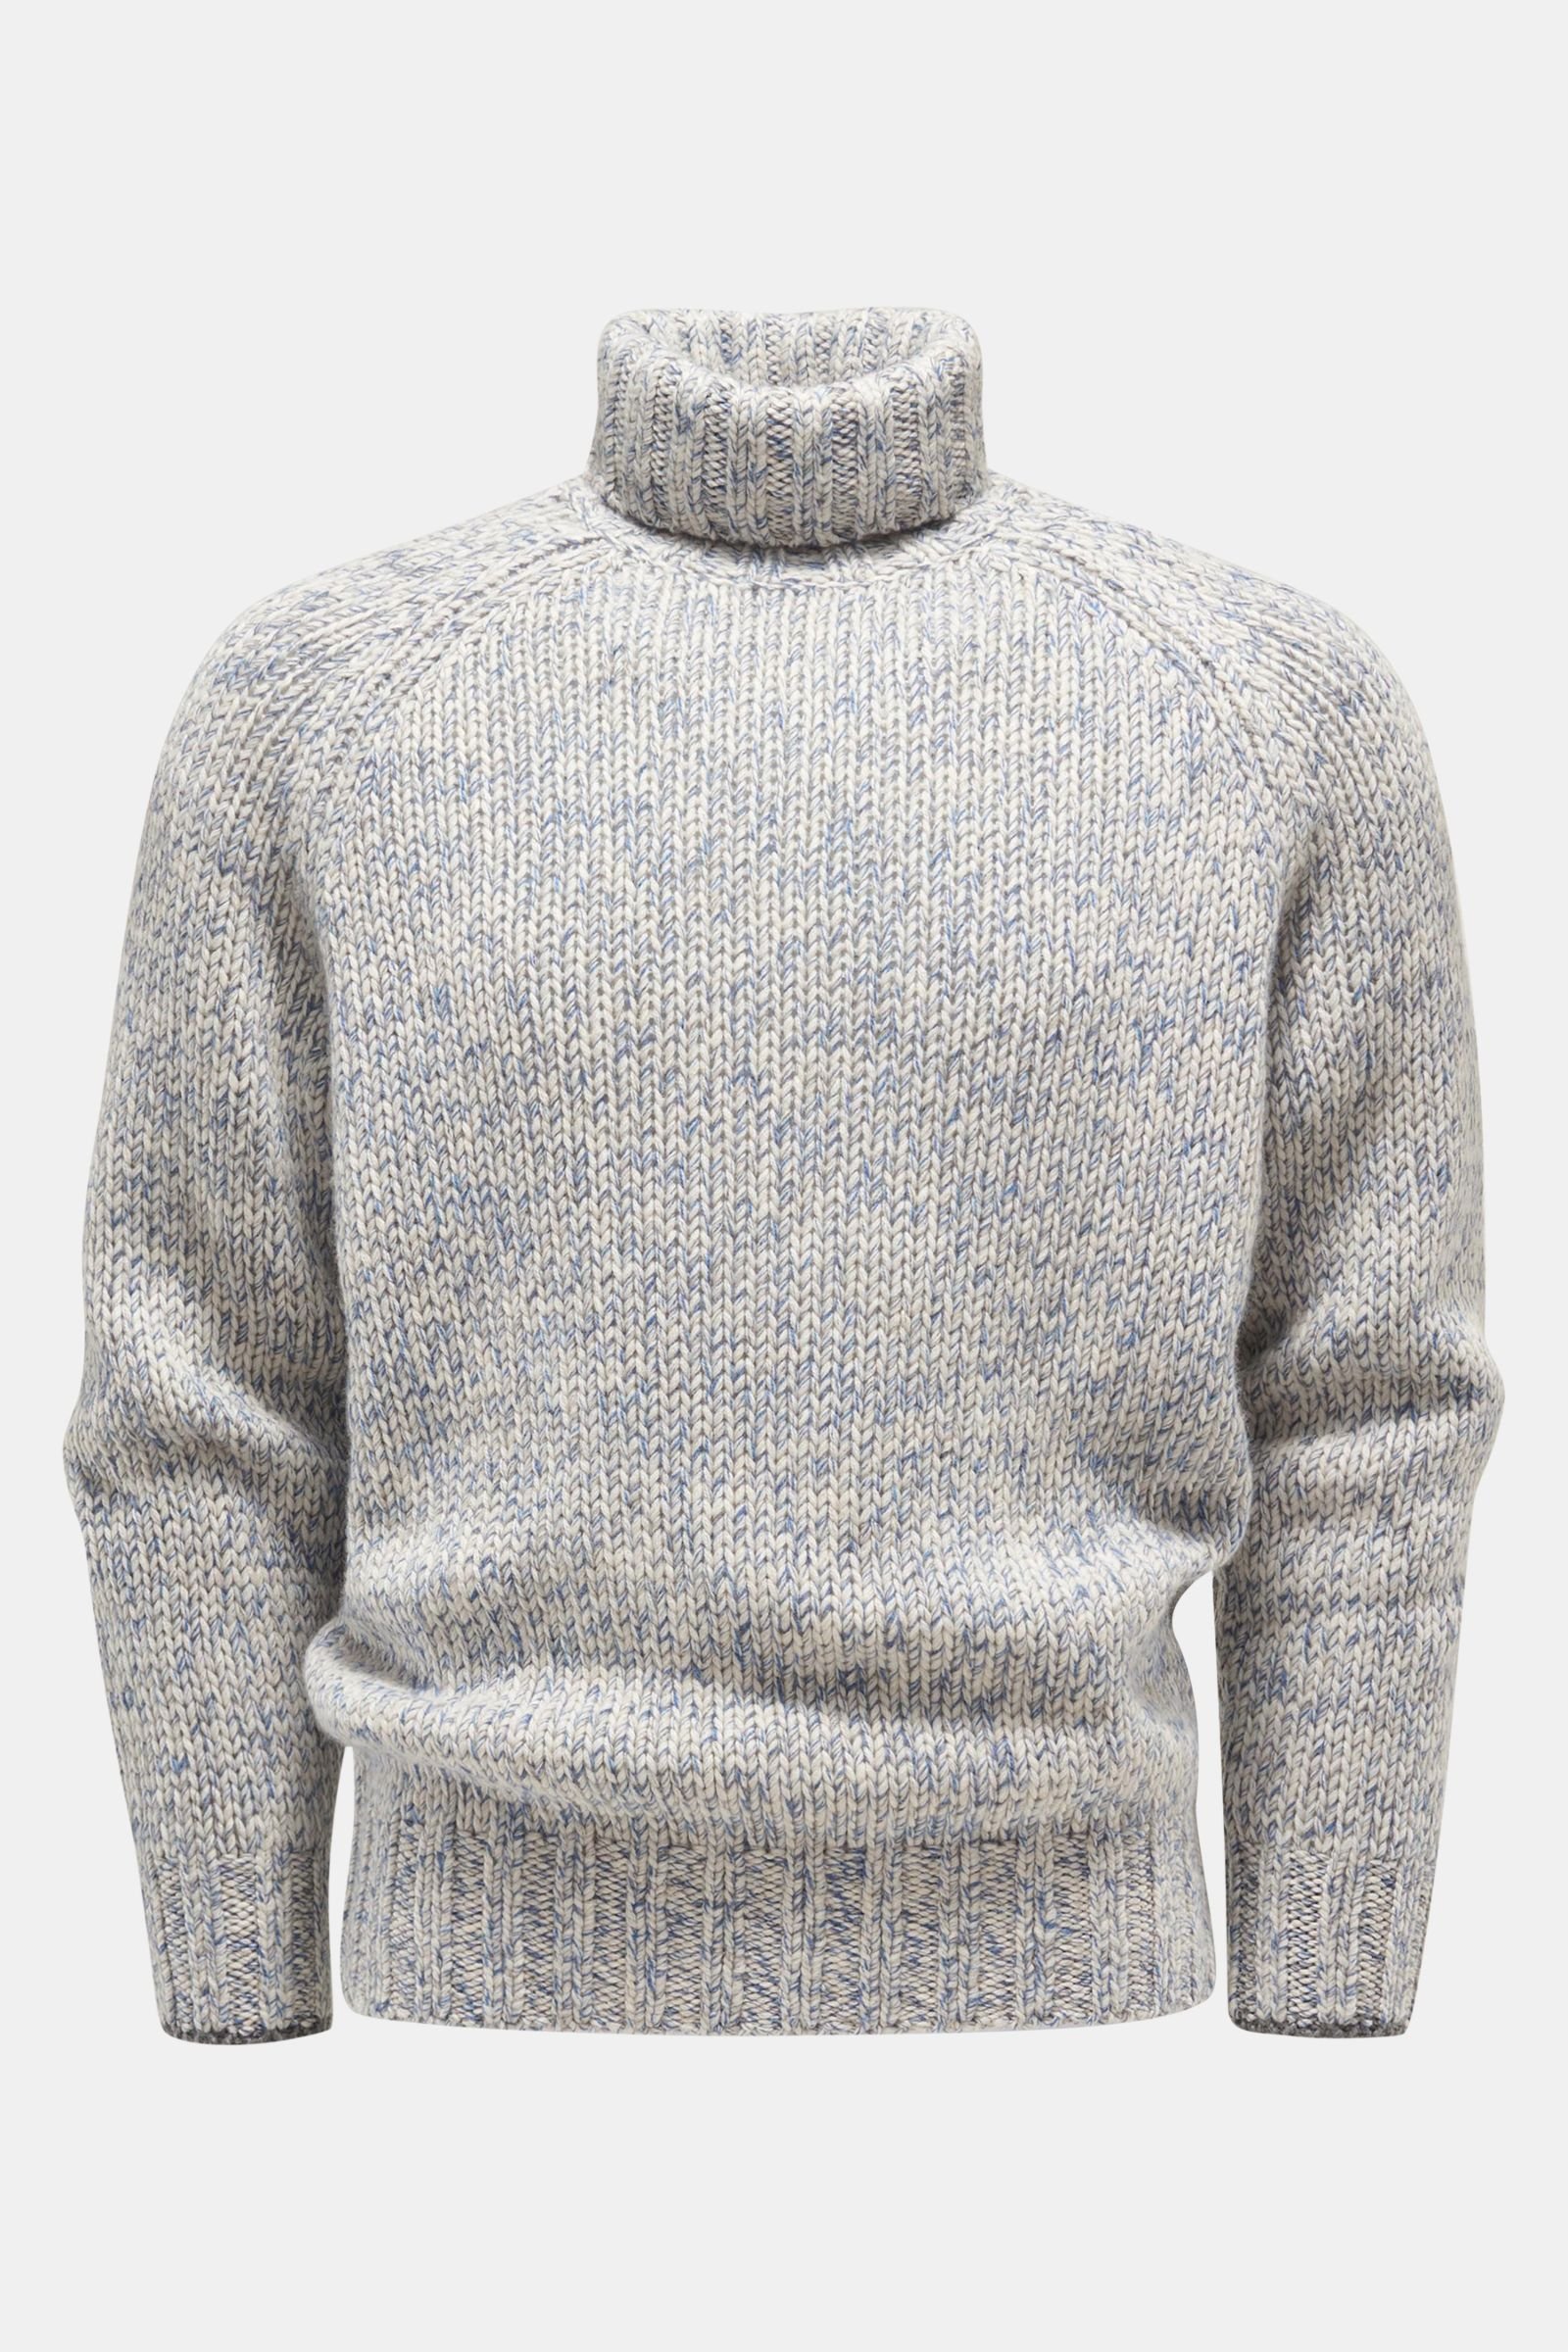 Cashmere turtleneck jumper off-white/grey-blue